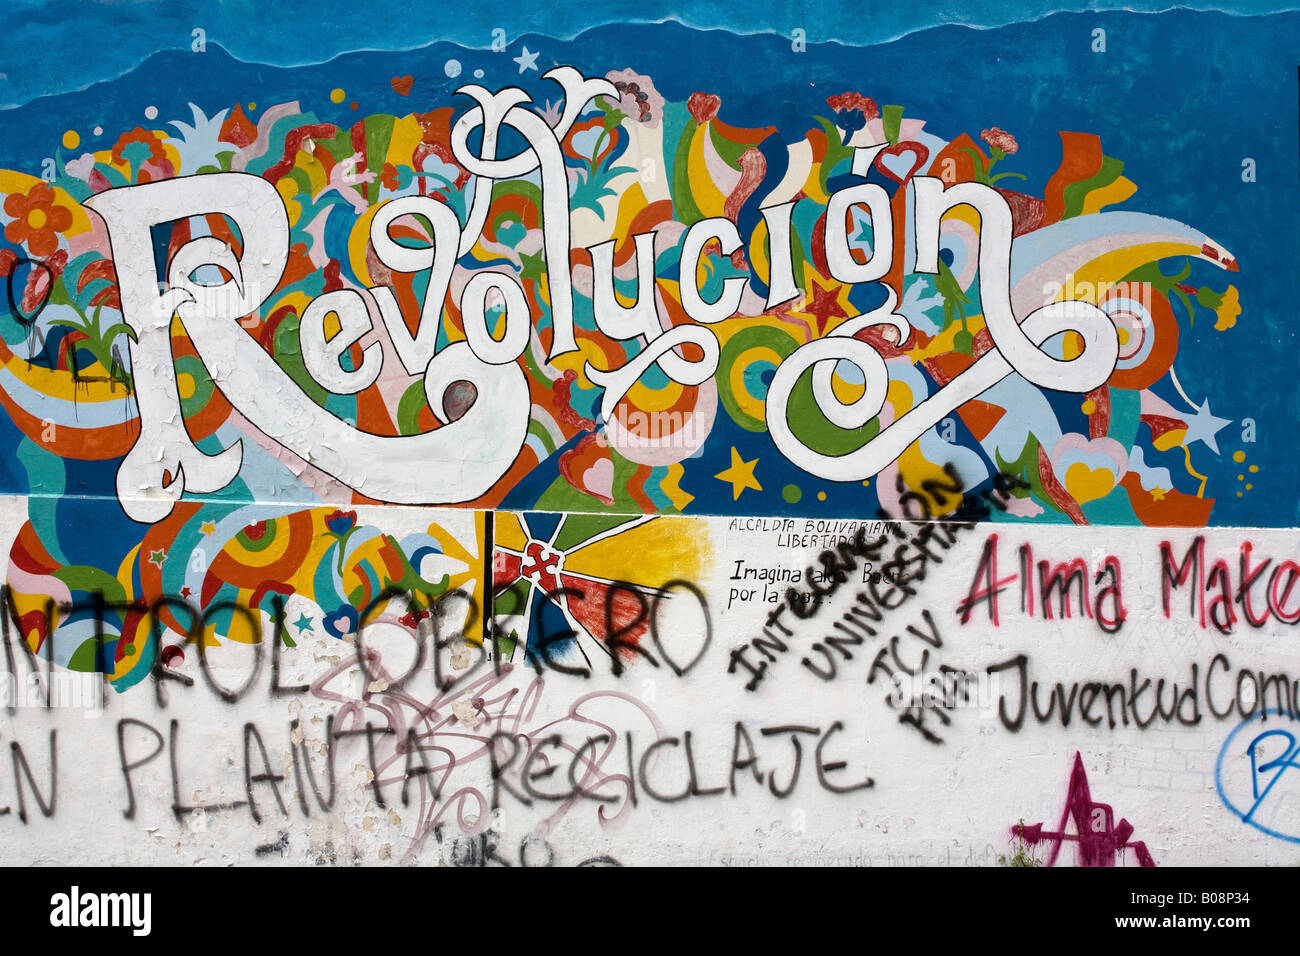 Graffiti, 'revolución' revolution, Mérida, Venezuela, South America Stock Photo